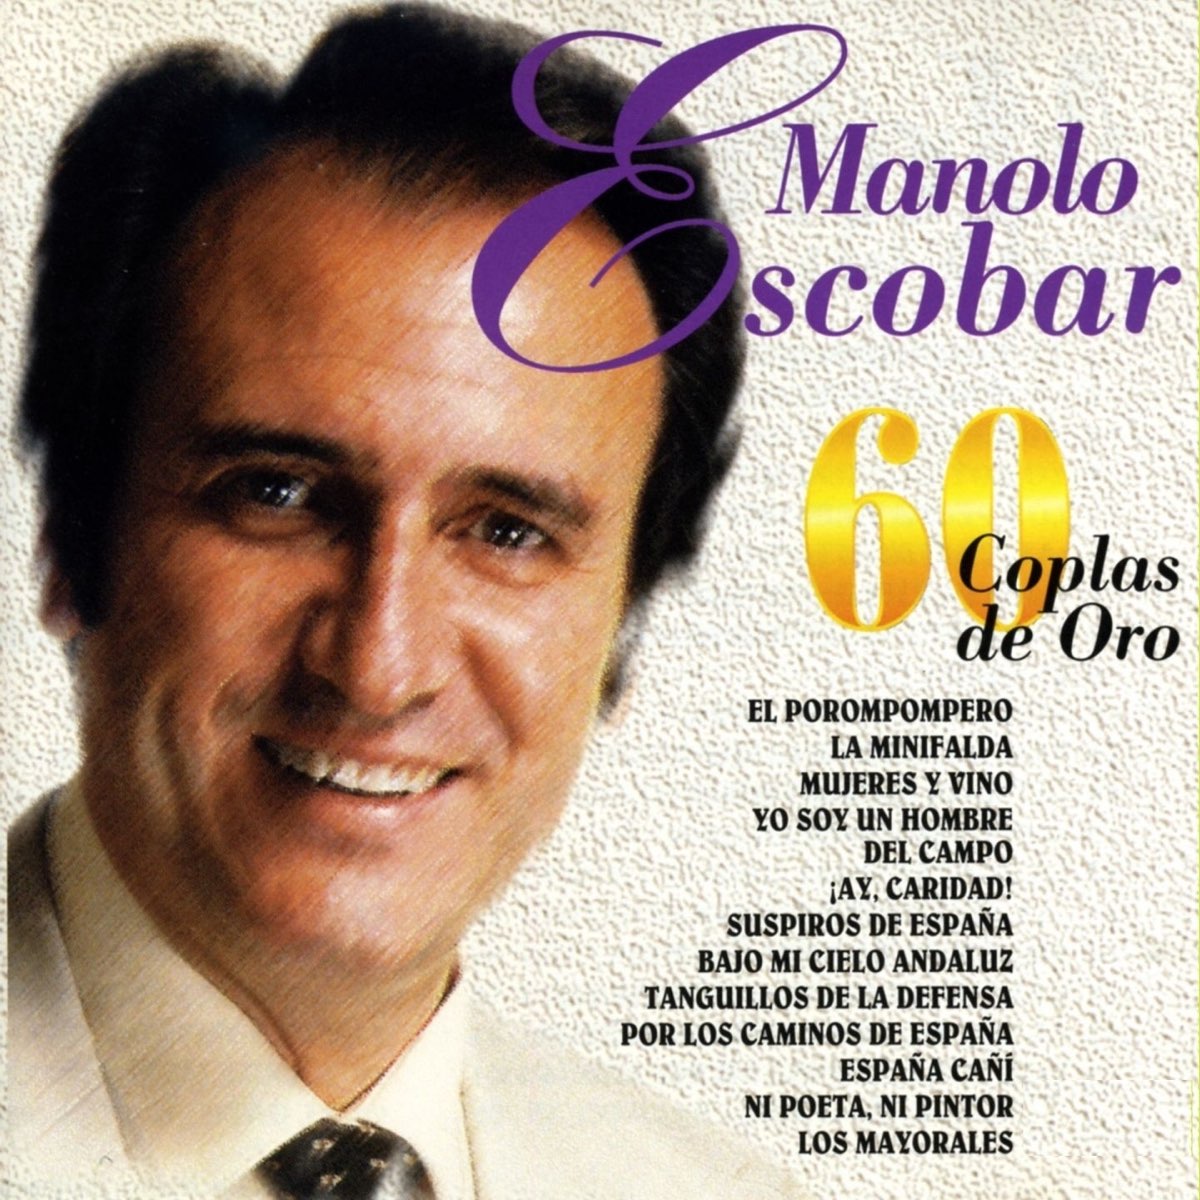 60 Coplas de Oro par Manolo Escobar sur Apple Music